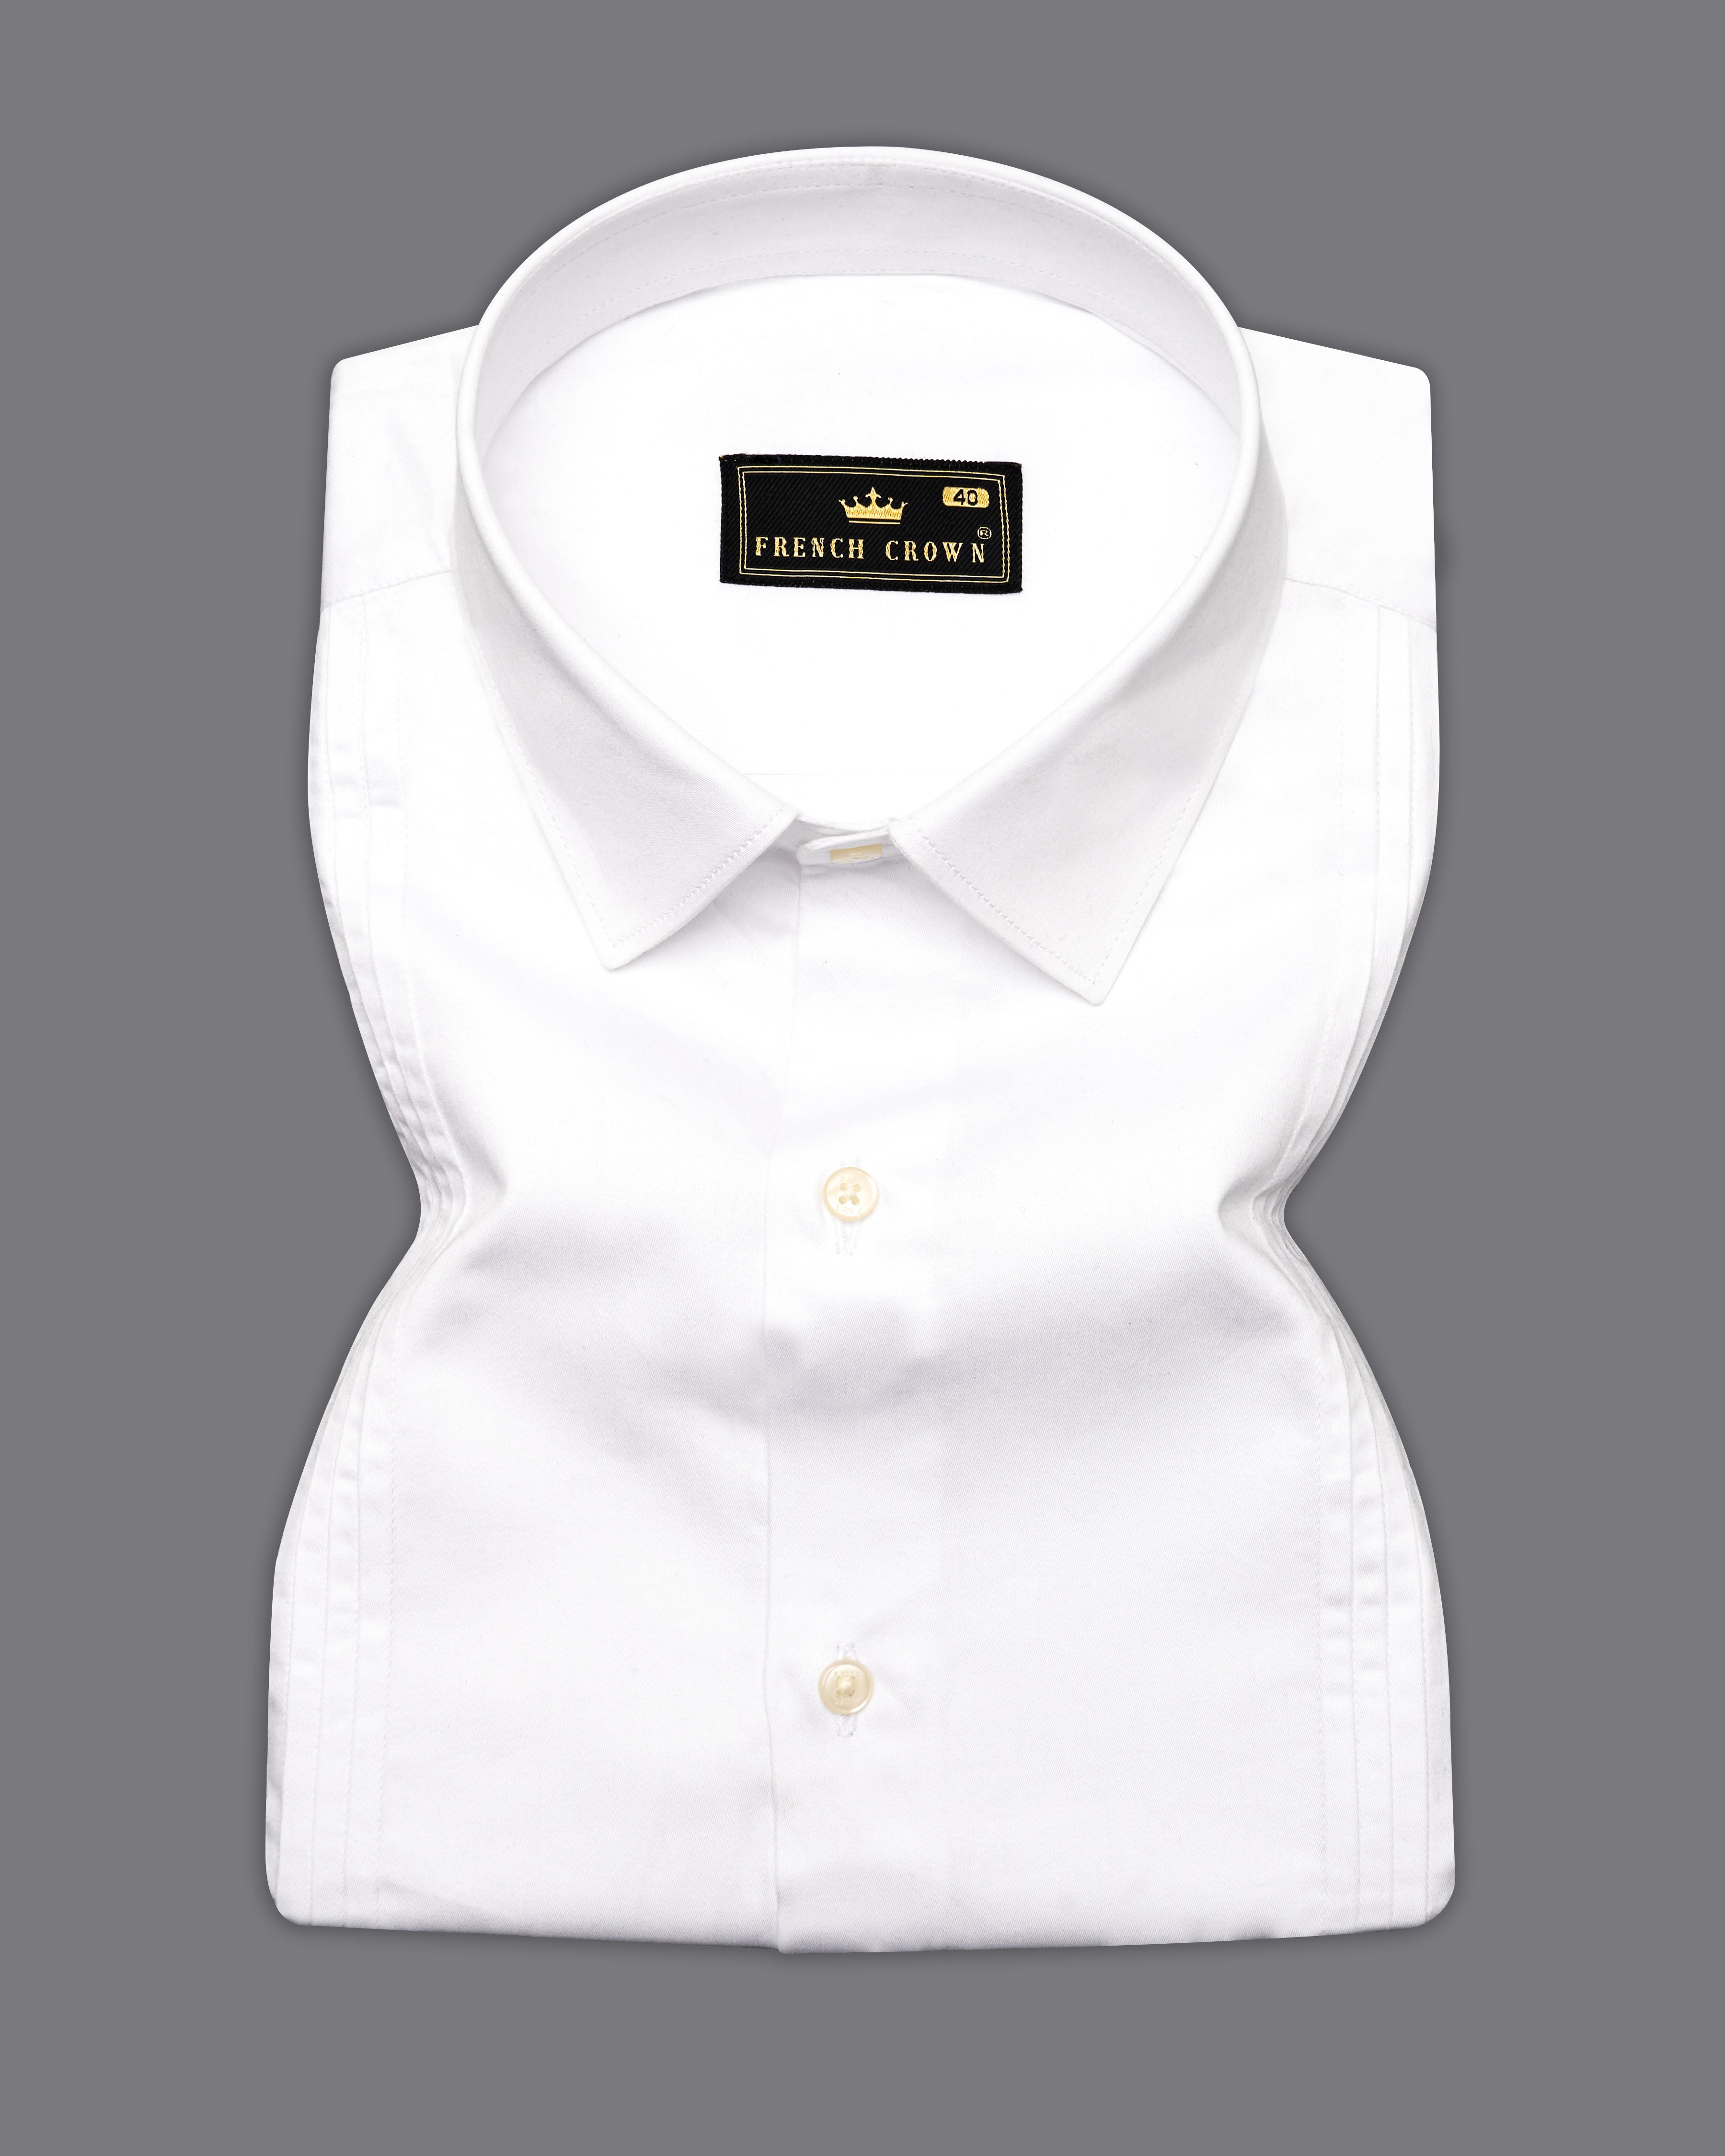 Bright White Pleated Super Soft Premium Cotton Tuxedo Shirt 9583-P595-SS-38, 9583-P595-SS-H-38, 9583-P595-SS-39, 9583-P595-SS-H-39, 9583-P595-SS-40, 9583-P595-SS-H-40, 9583-P595-SS-42, 9583-P595-SS-H-42, 9583-P595-SS-44, 9583-P595-SS-H-44, 9583-P595-SS-46, 9583-P595-SS-H-46, 9583-P595-SS-48, 9583-P595-SS-H-48, 9583-P595-SS-50, 9583-P595-SS-H-50, 9583-P595-SS-52, 9583-P595-SS-H-52